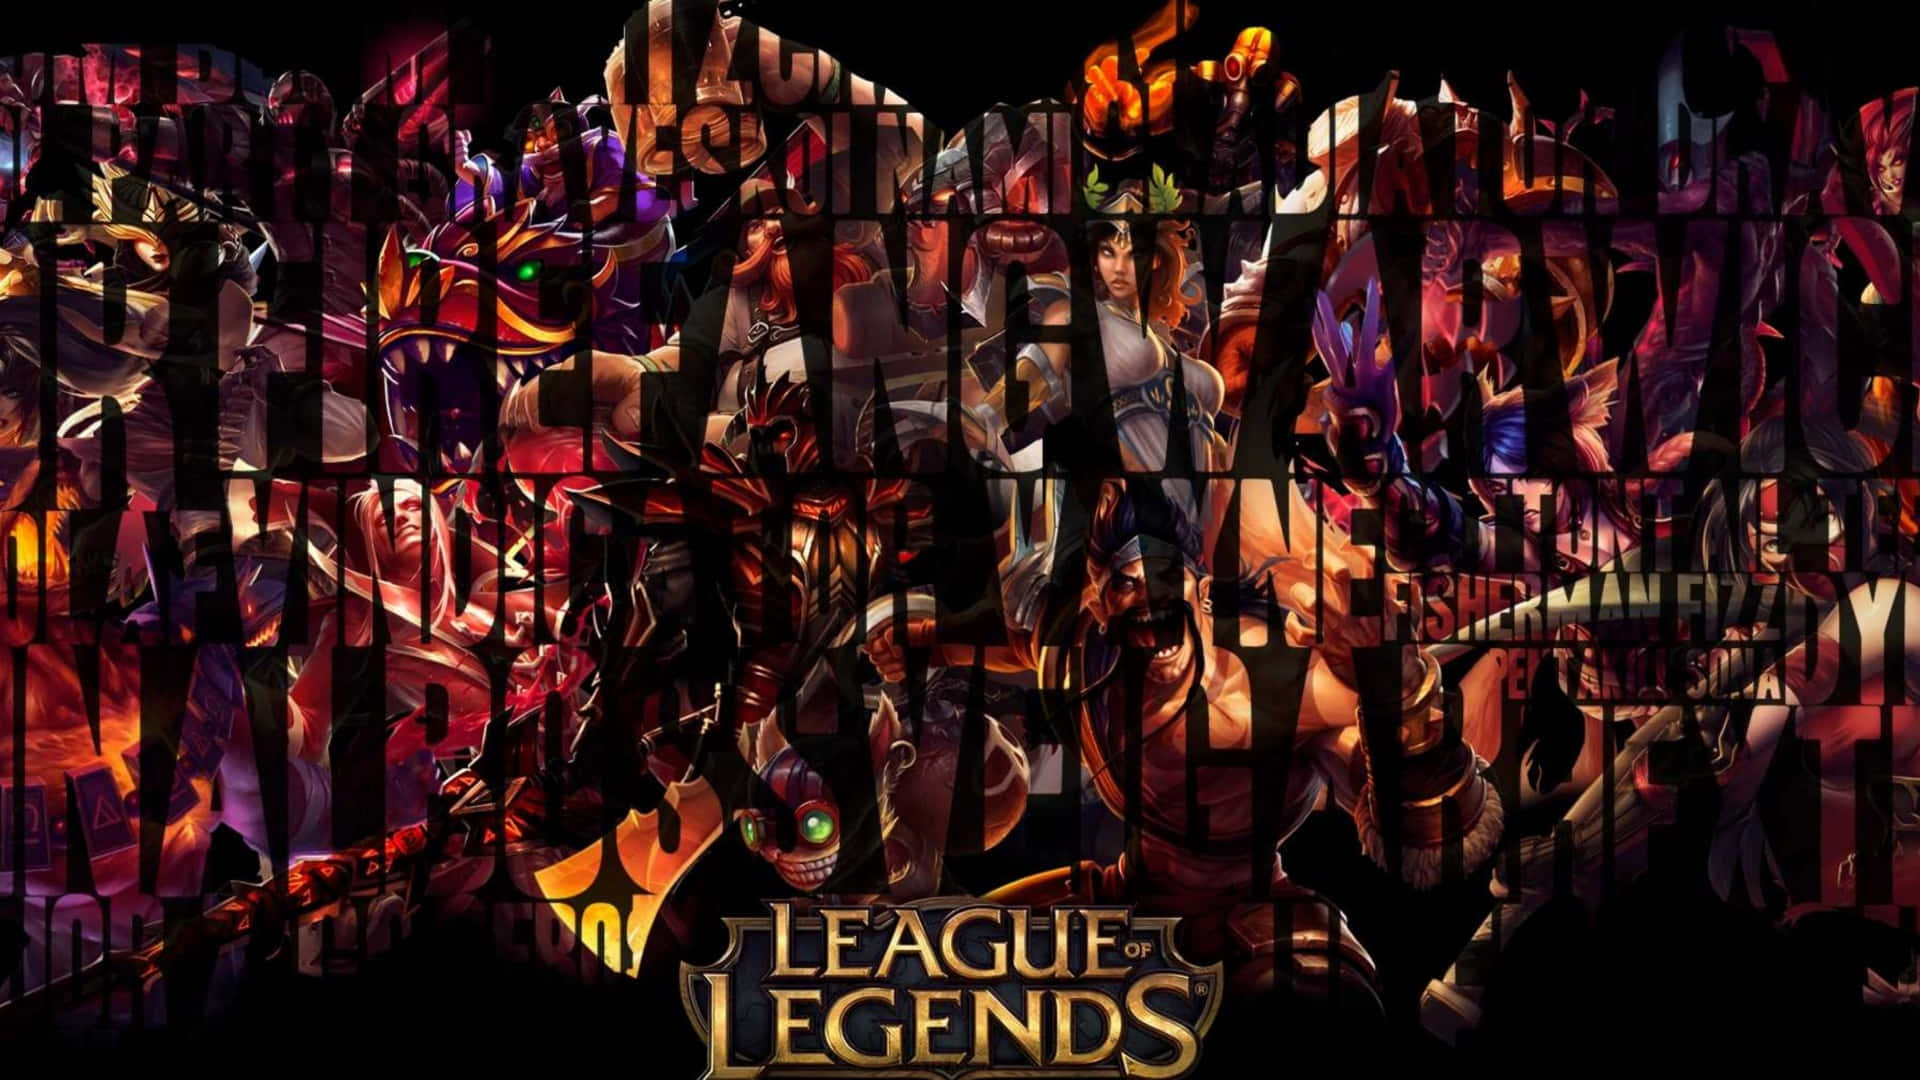 Leagueof Legends Baggrunde.